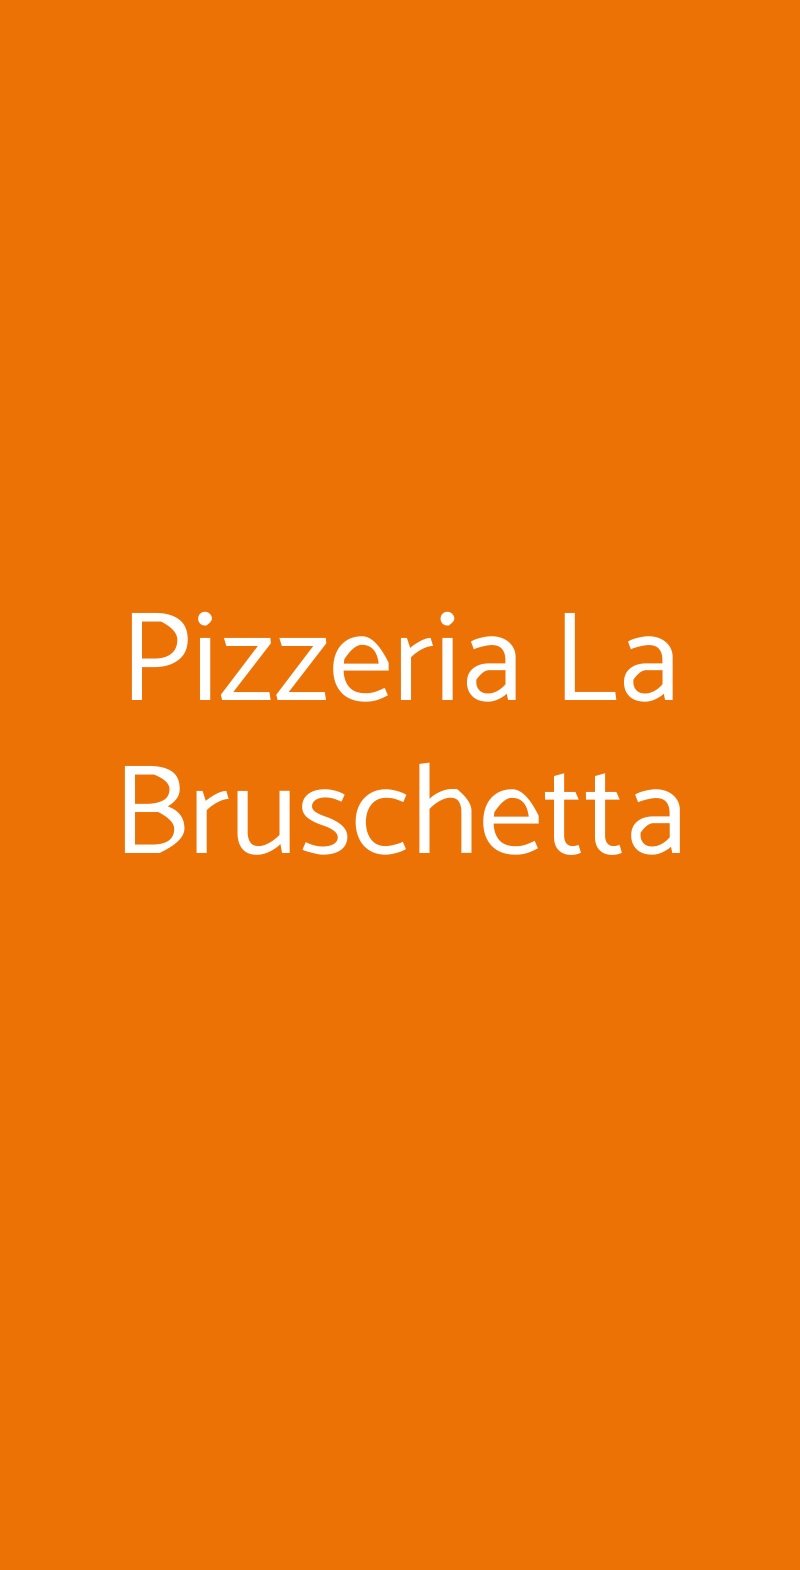 Pizzeria La Bruschetta Barletta menù 1 pagina